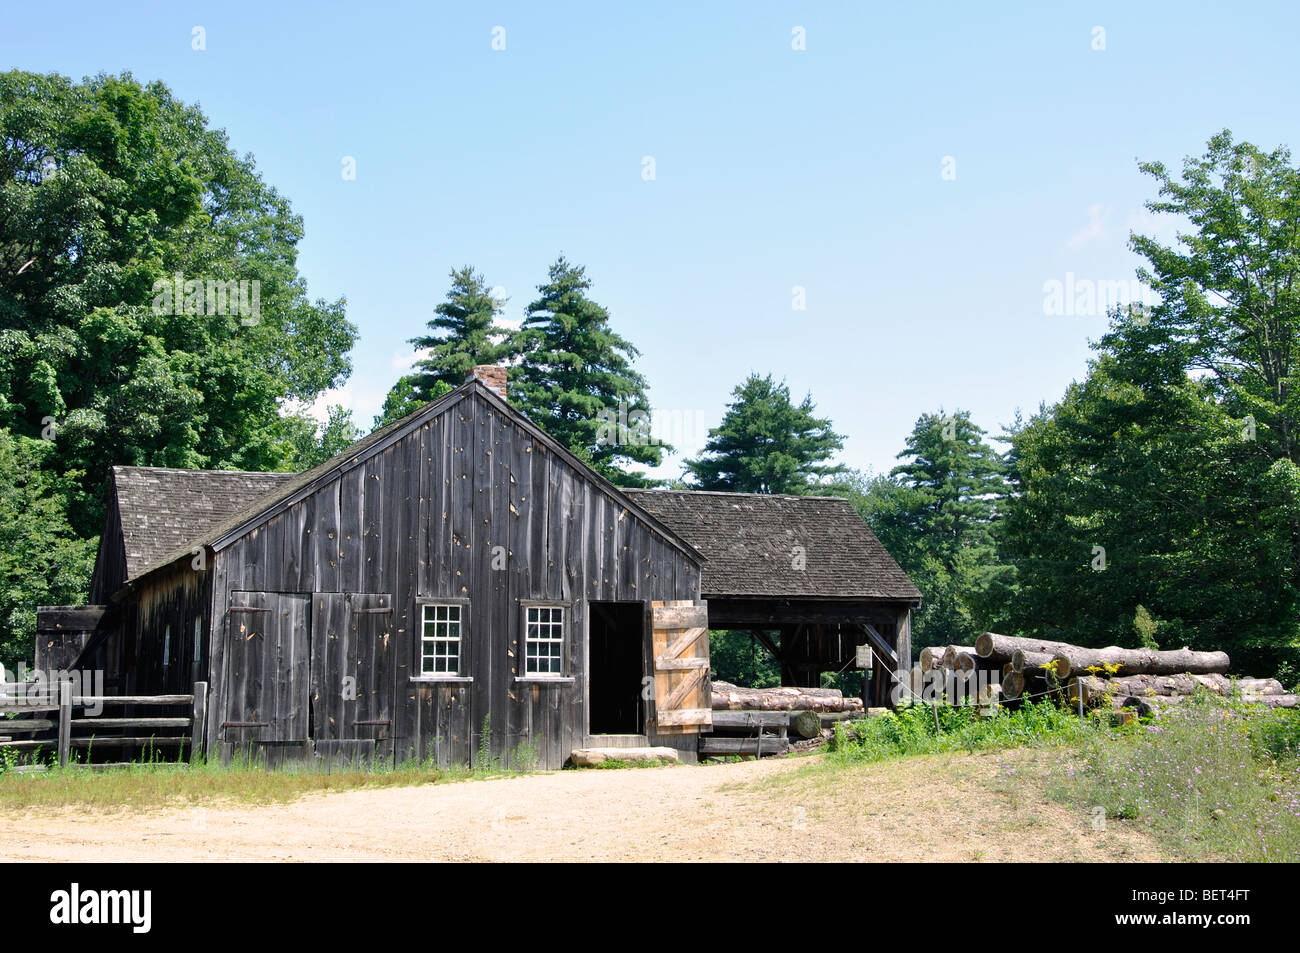 Vieille maison de ferme - années 1700, Massachusetts Banque D'Images